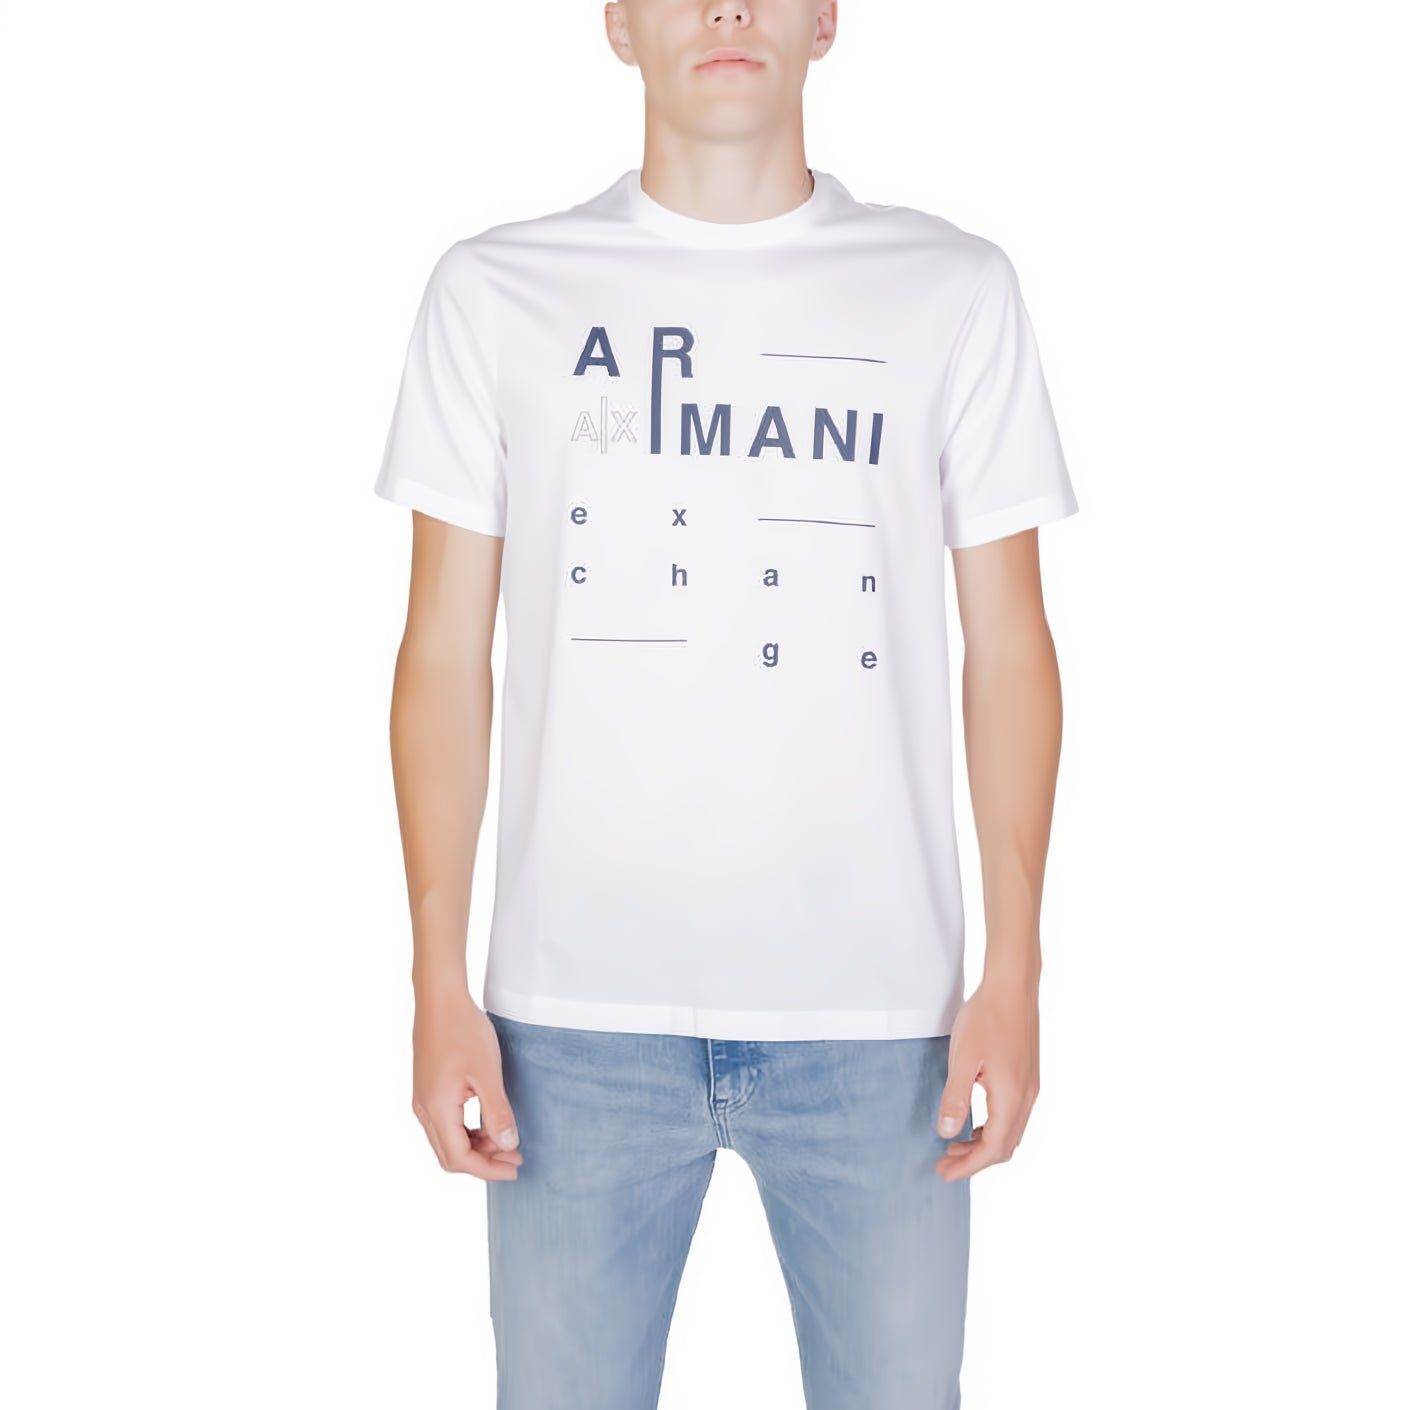 ARMANI EXCHANGE T-Shirt kurzarm, Rundhals, ein Must-Have für Ihre Kleidungskollektion! | T-Shirts